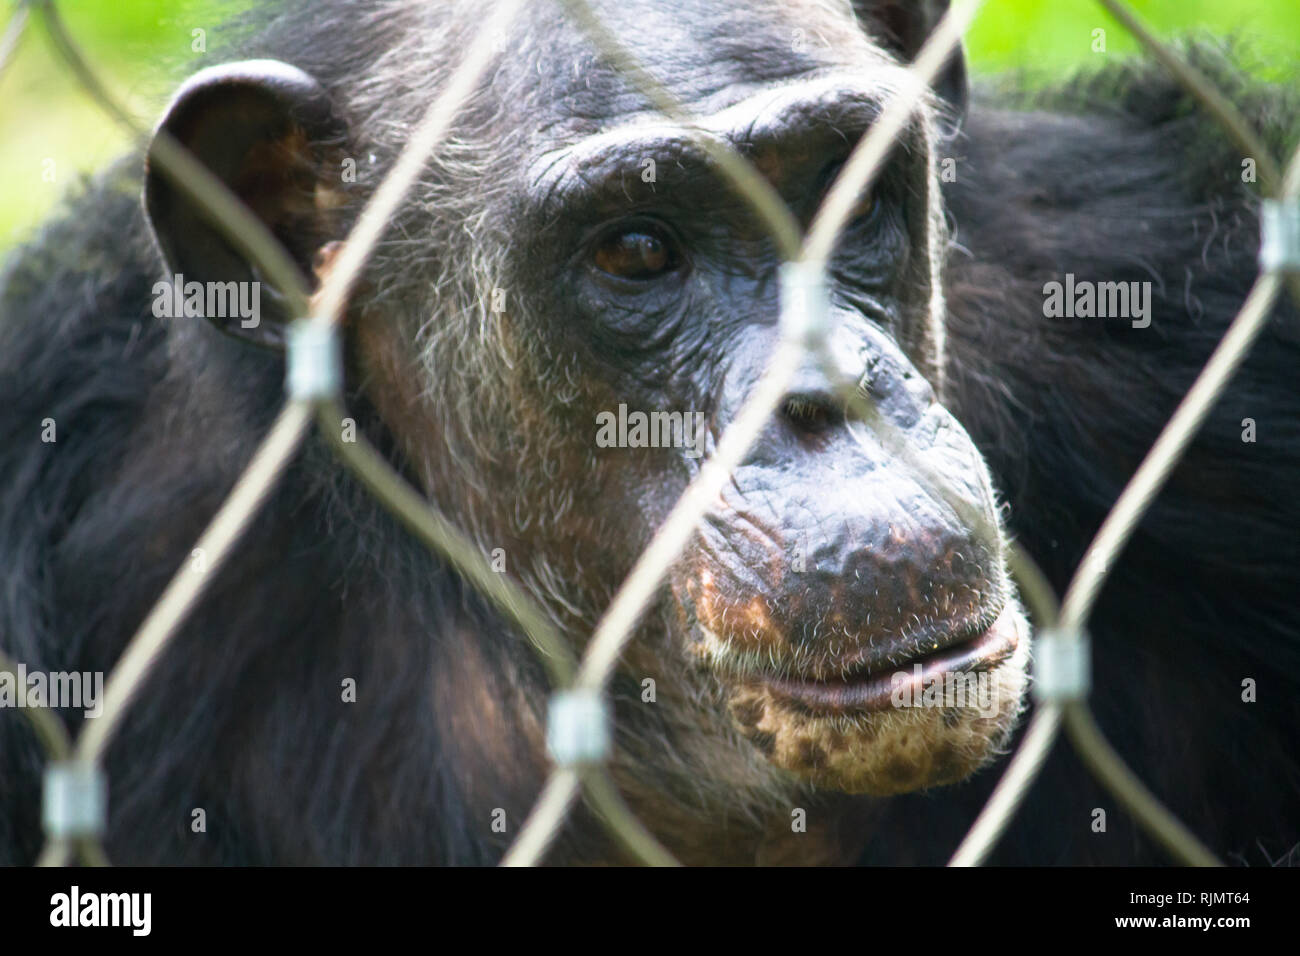 Seul chimpanzé face portrait derrière la grille suivante protection ou de bars dans un parc du zoo, apparemment dans un triste pensive expression faciale et contre un livre vert sur Banque D'Images